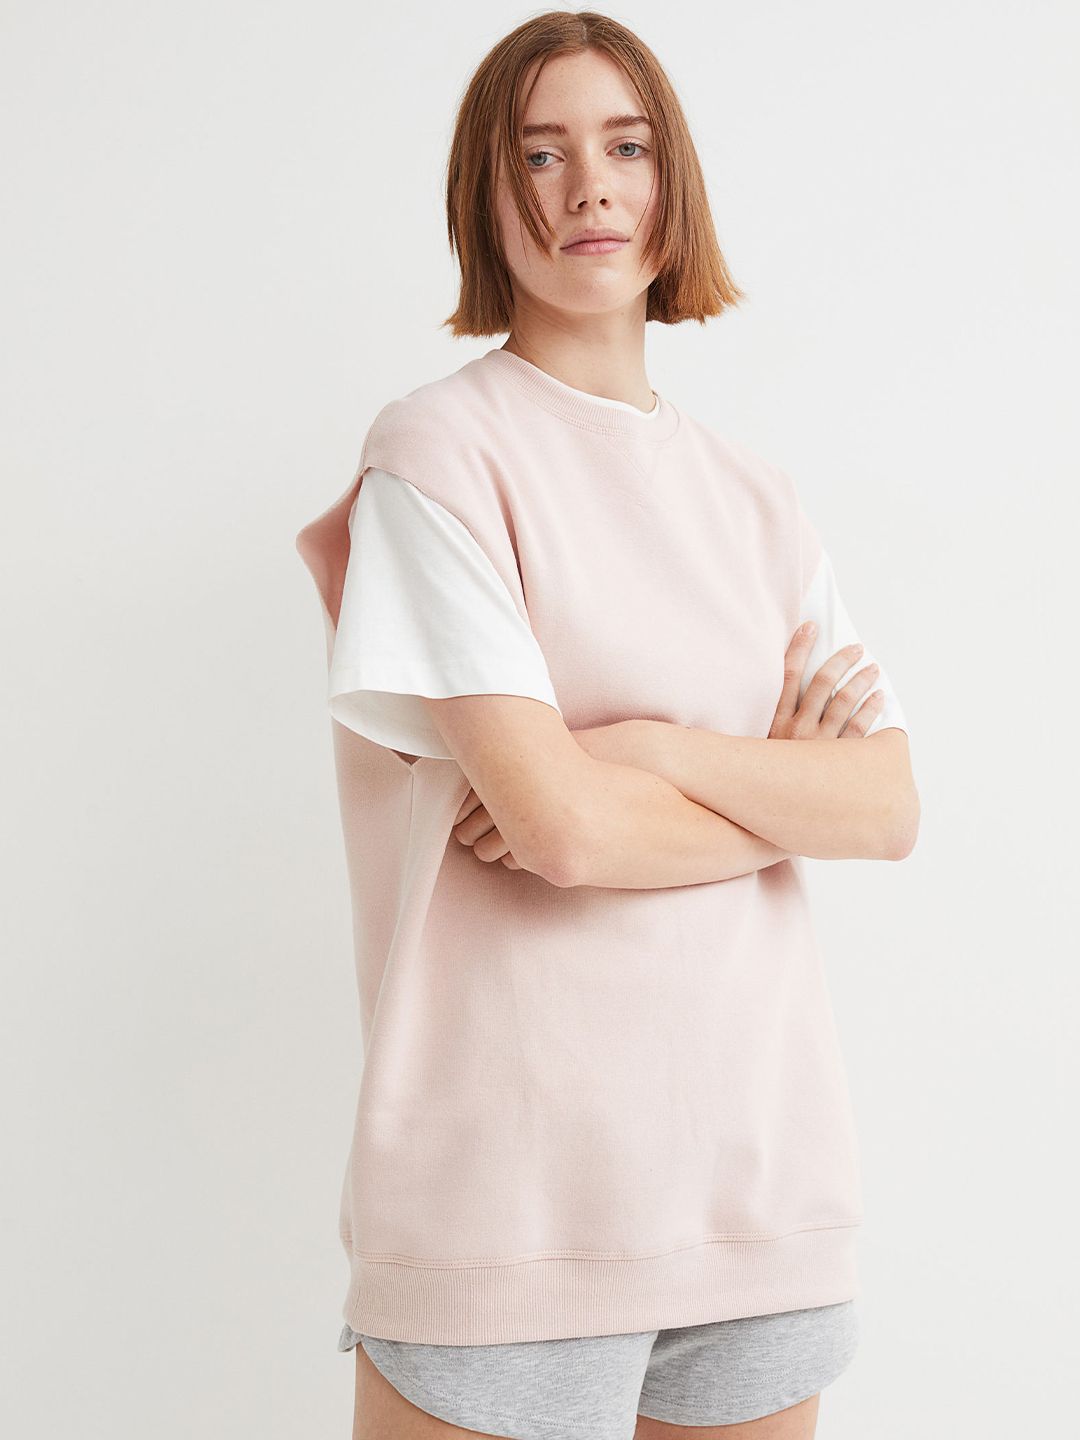 H&M Women Pink Sleeveless sweatshirt Price in India